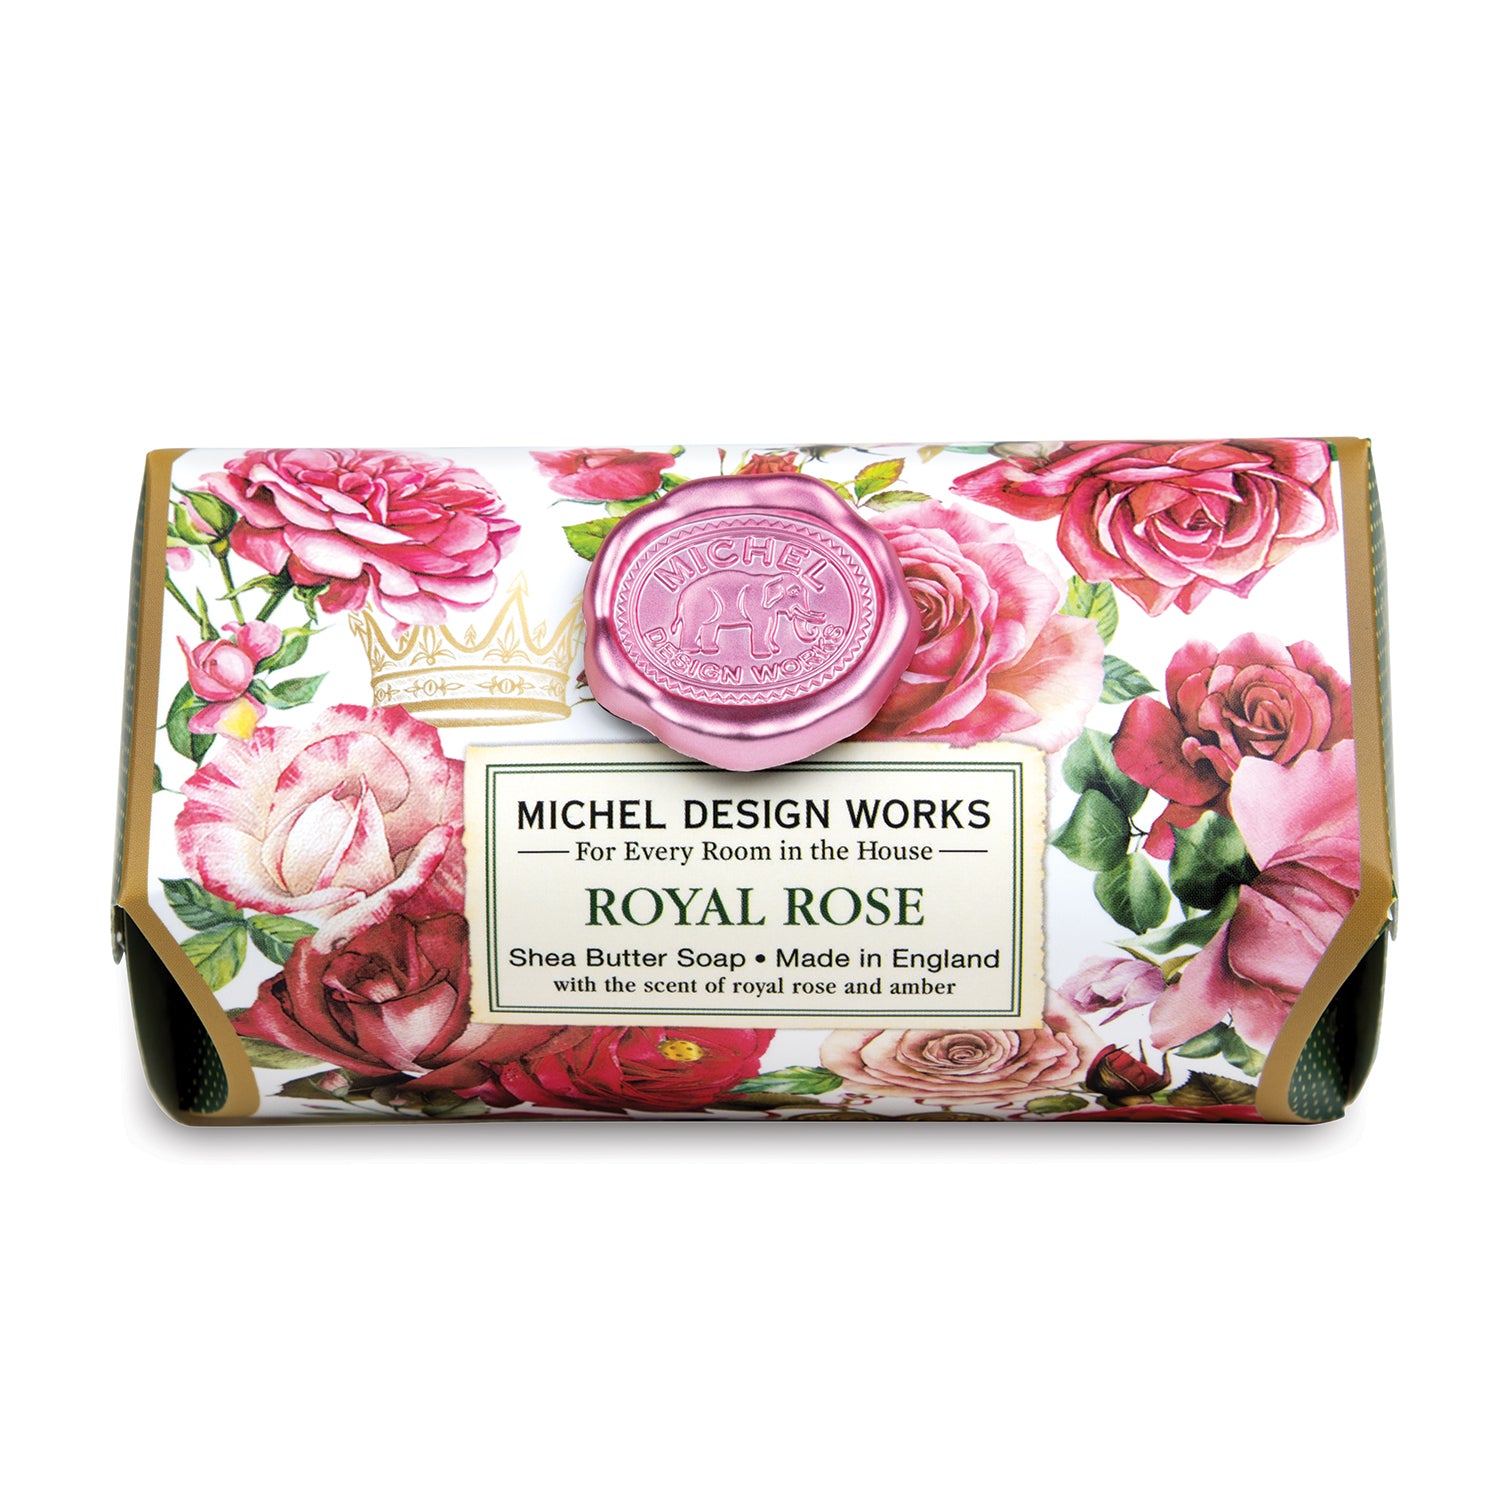 Hånd & Badesæbe Royal Rose Michel Design Works